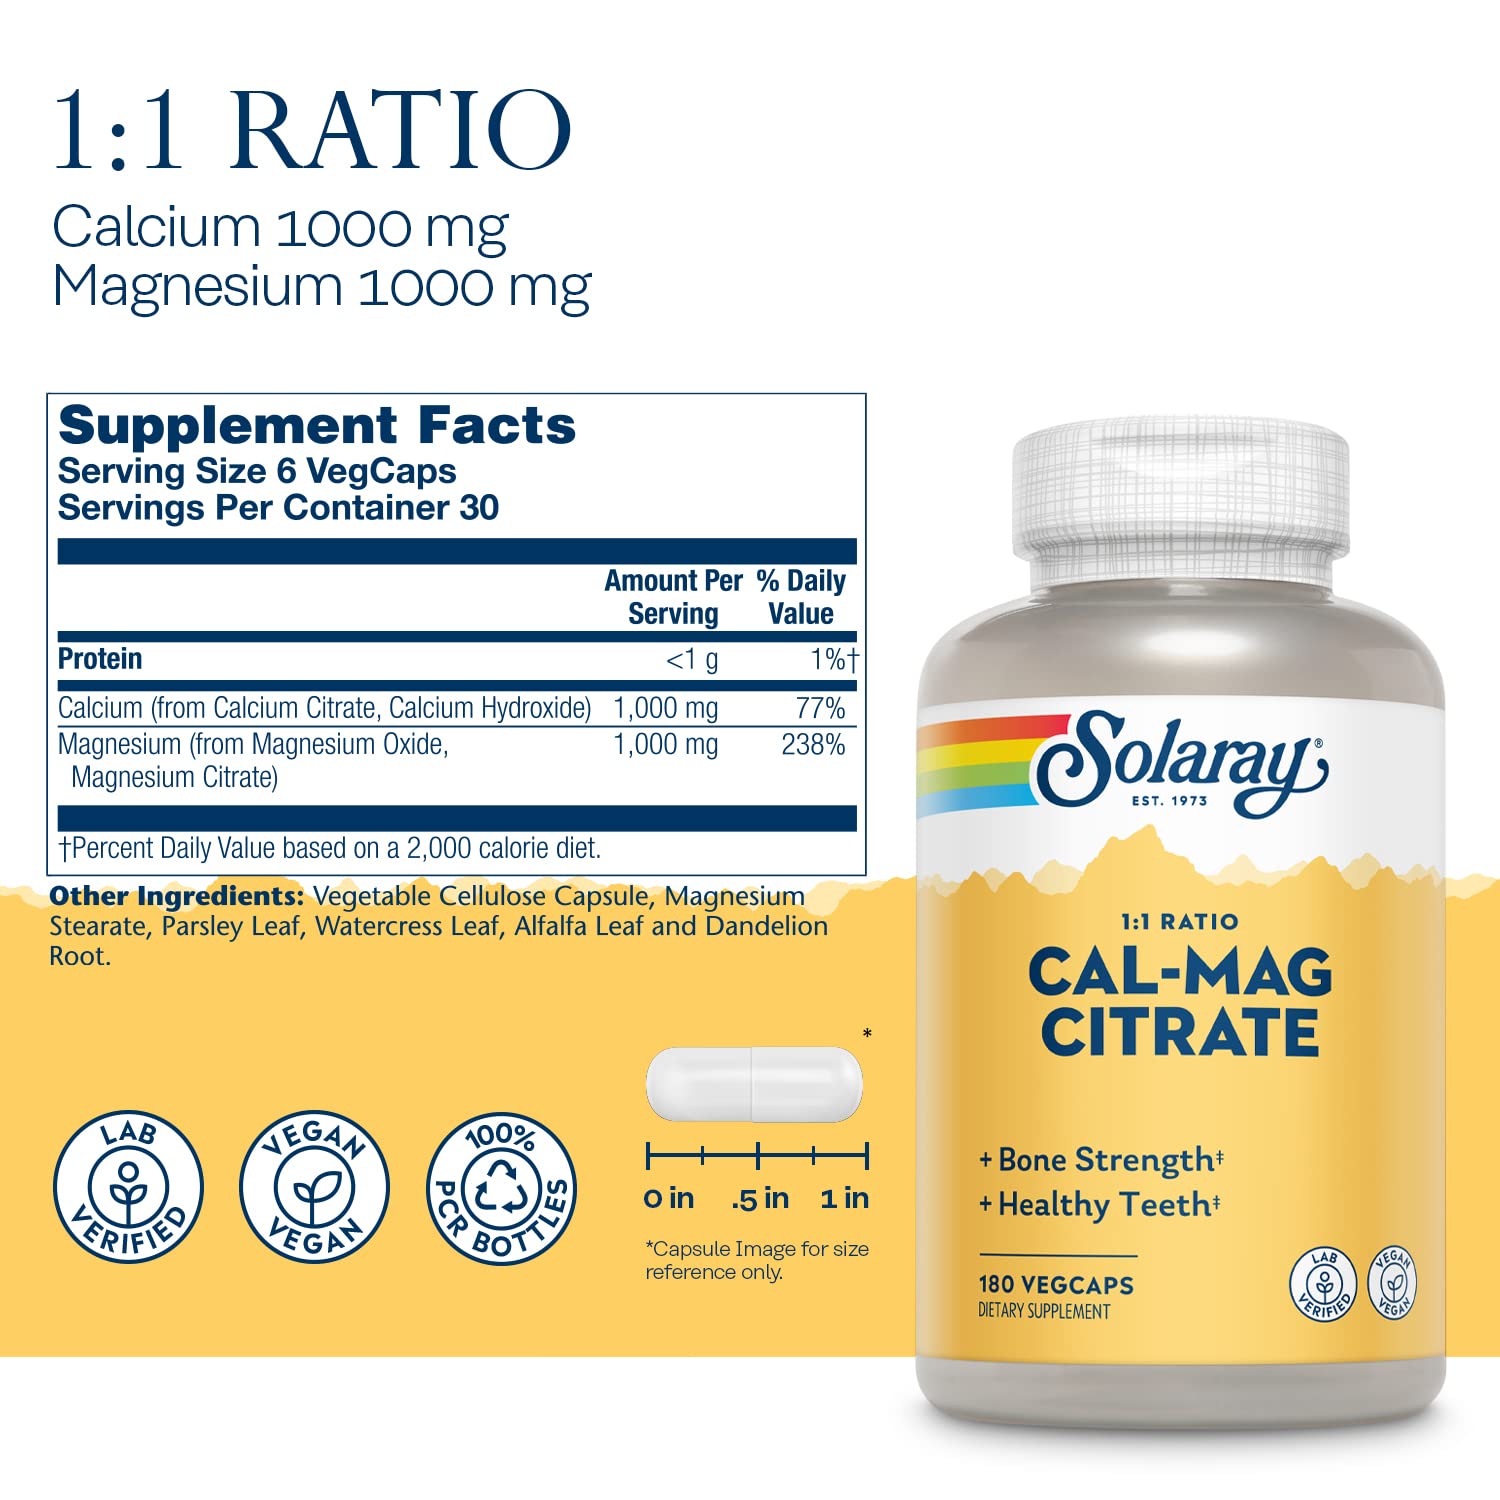 Solaray Calcium & Magnesium Citrate 1:1 Ratio 180ct VegCap